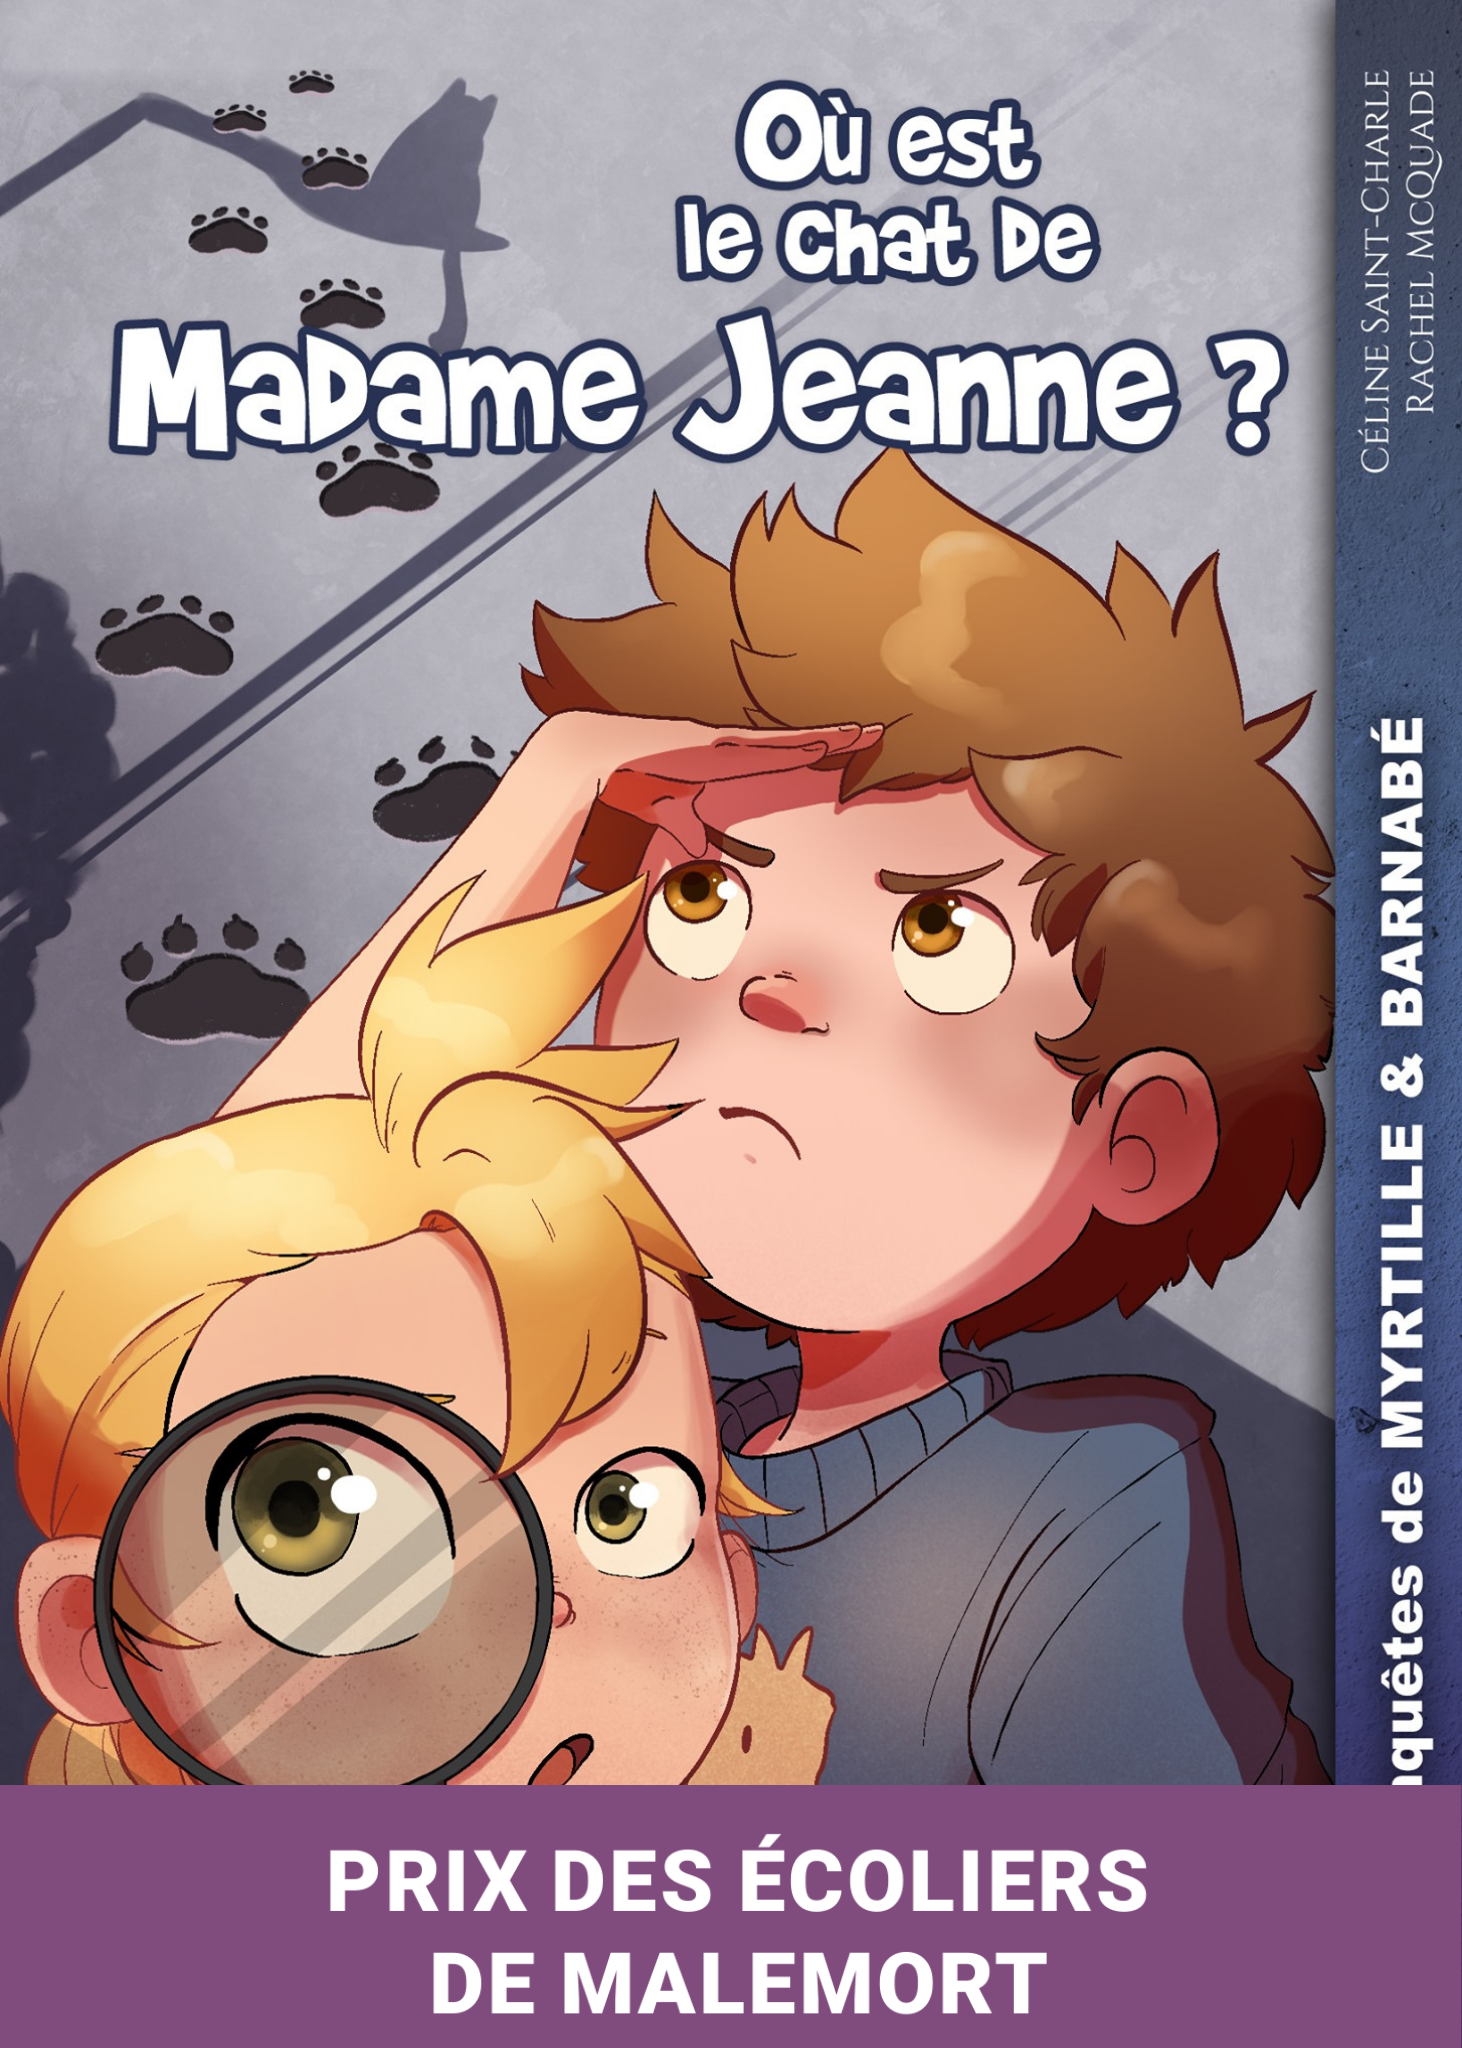 M&B | Où est le chat de madame Jeanne - Céline saint-Charle